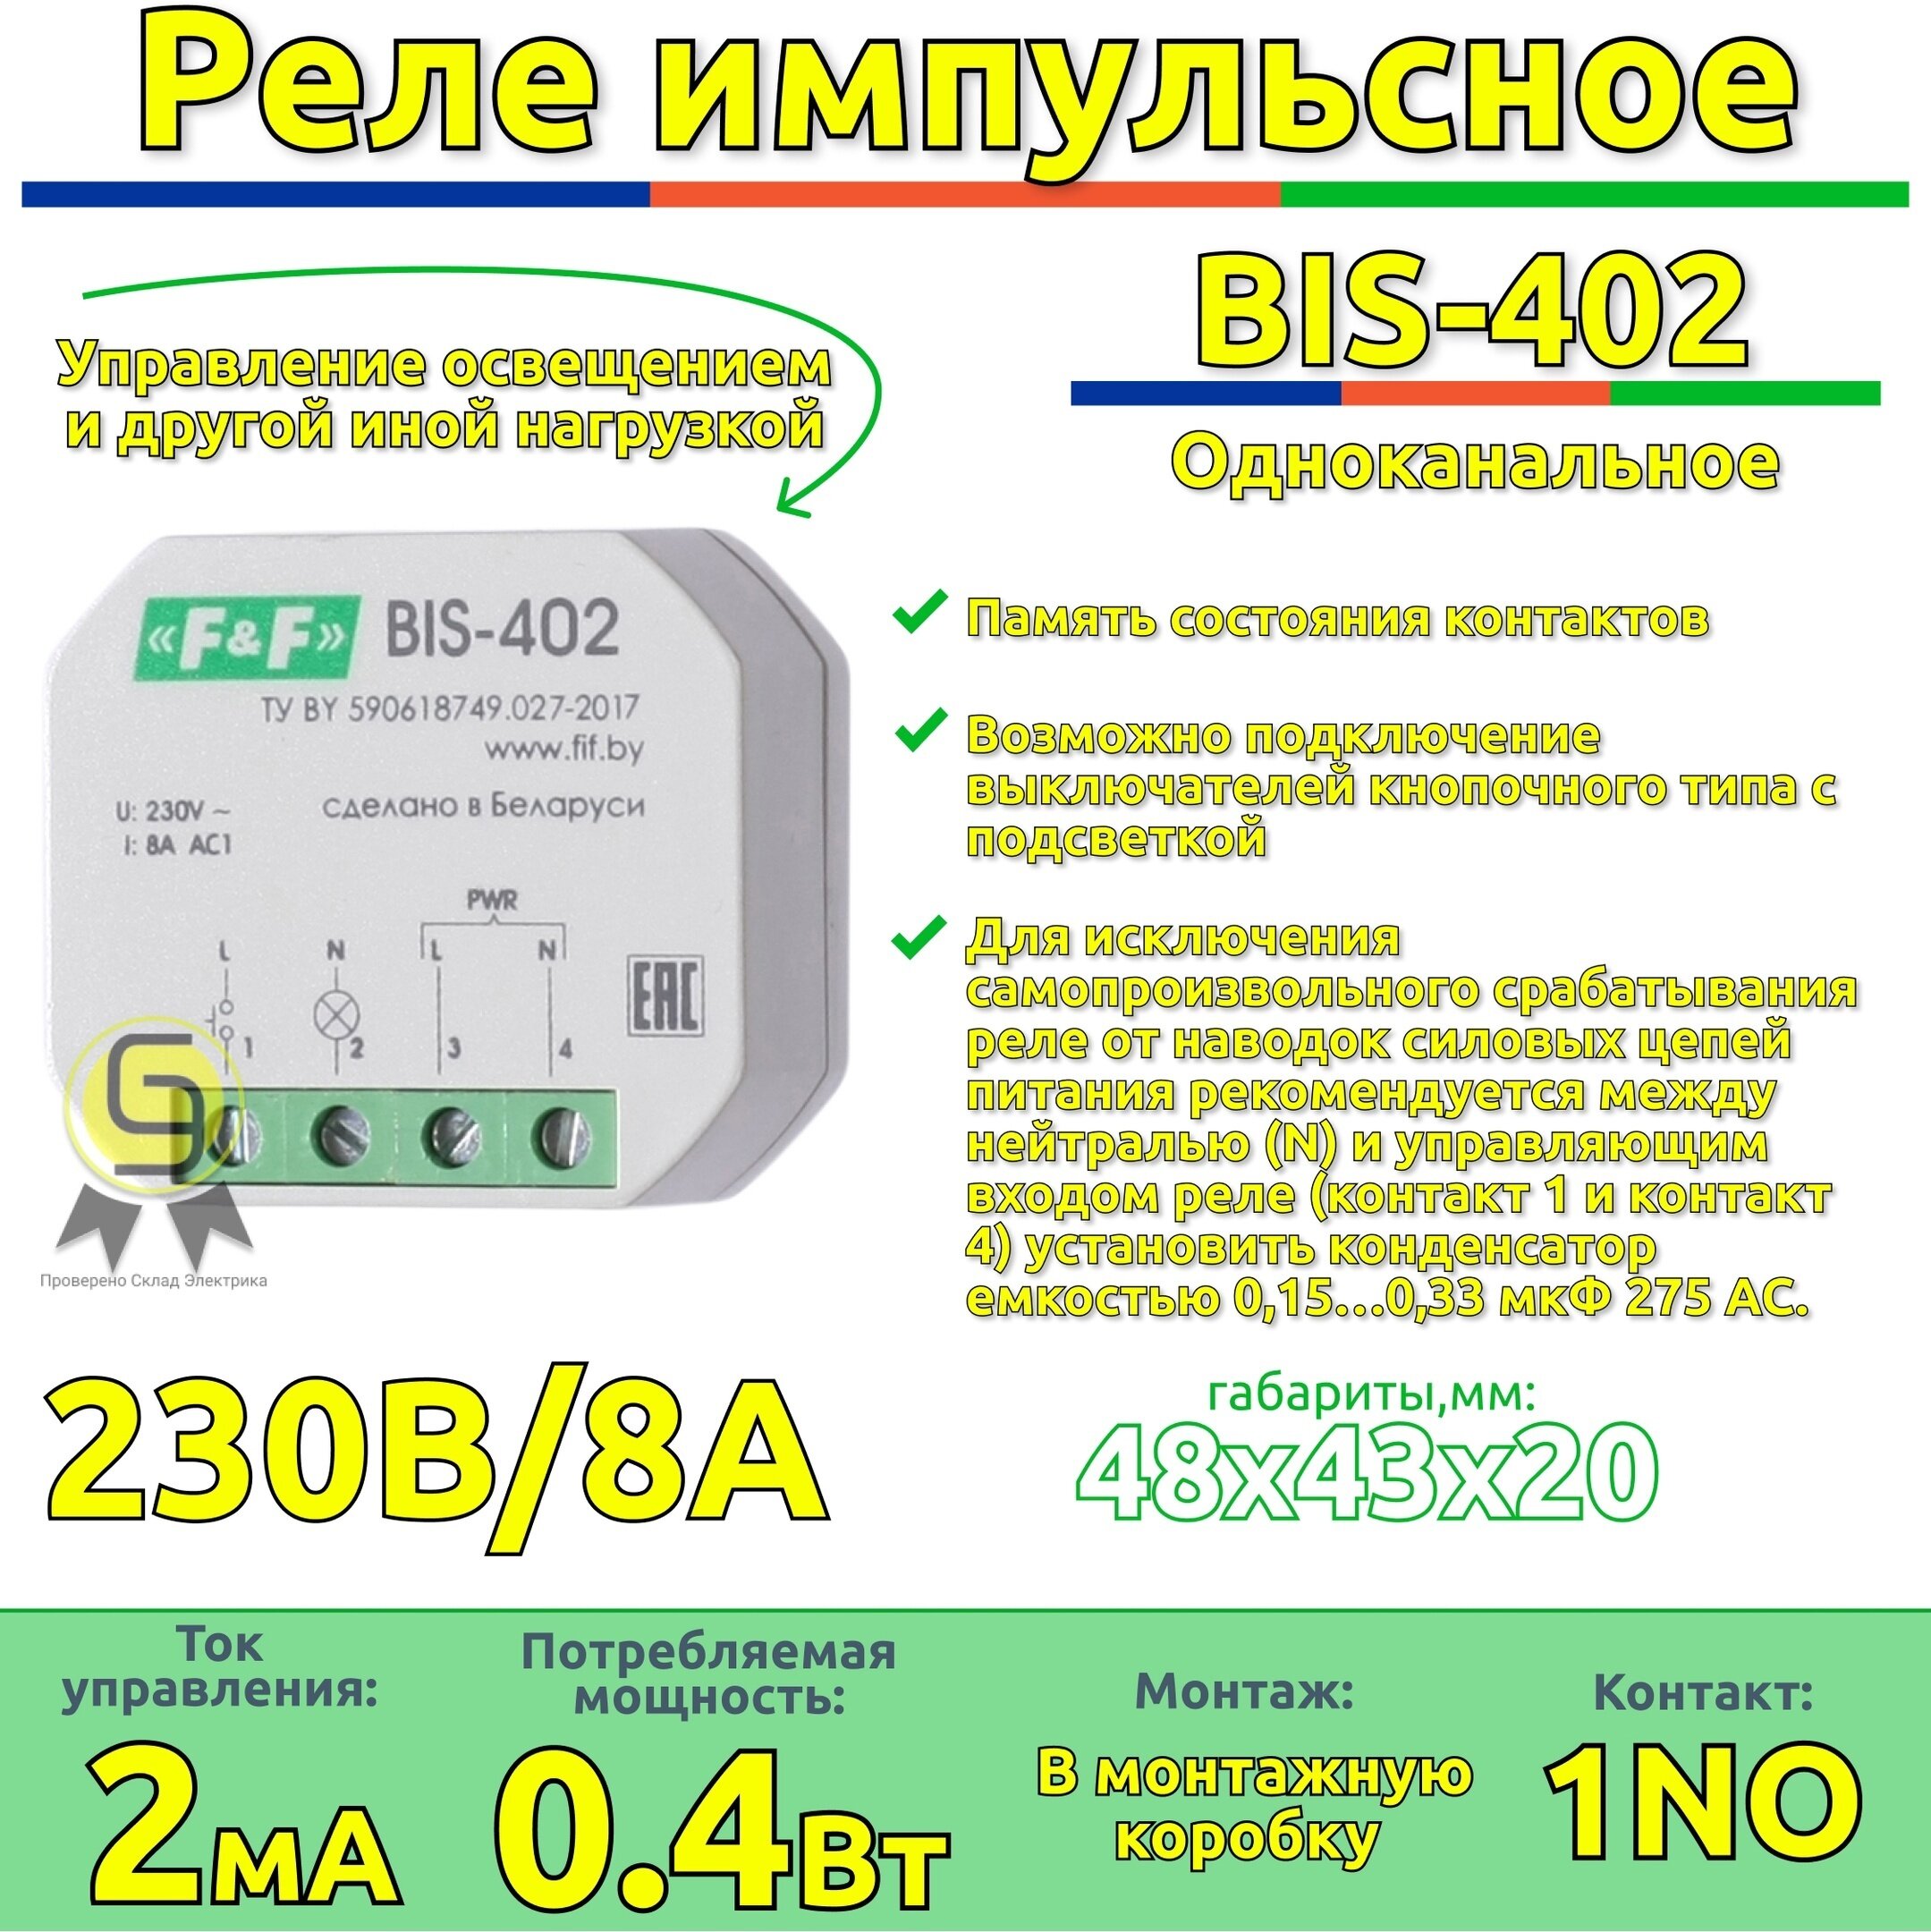 Реле импульсное BIS-402 Евроавтоматика f&f, 8А с функцией памяти состояния контактов (комплект 3шт)